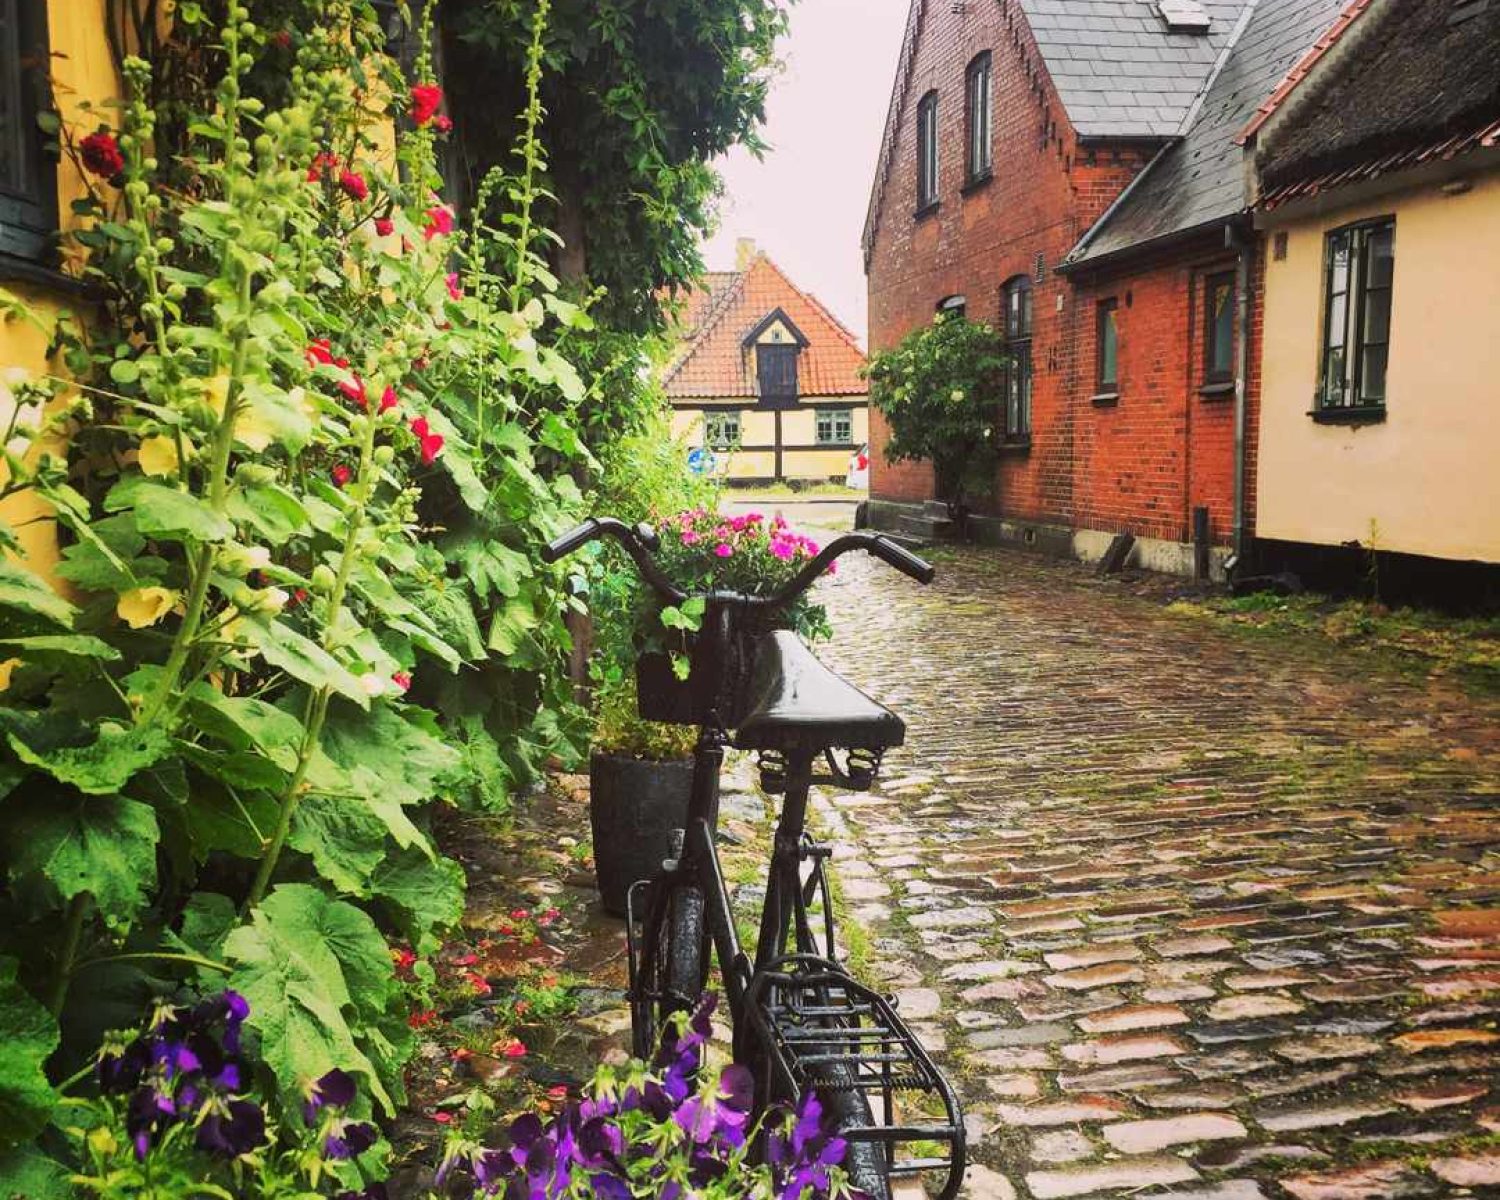 Calles típicas del pueblo costero de Dragør con una bici aparcada